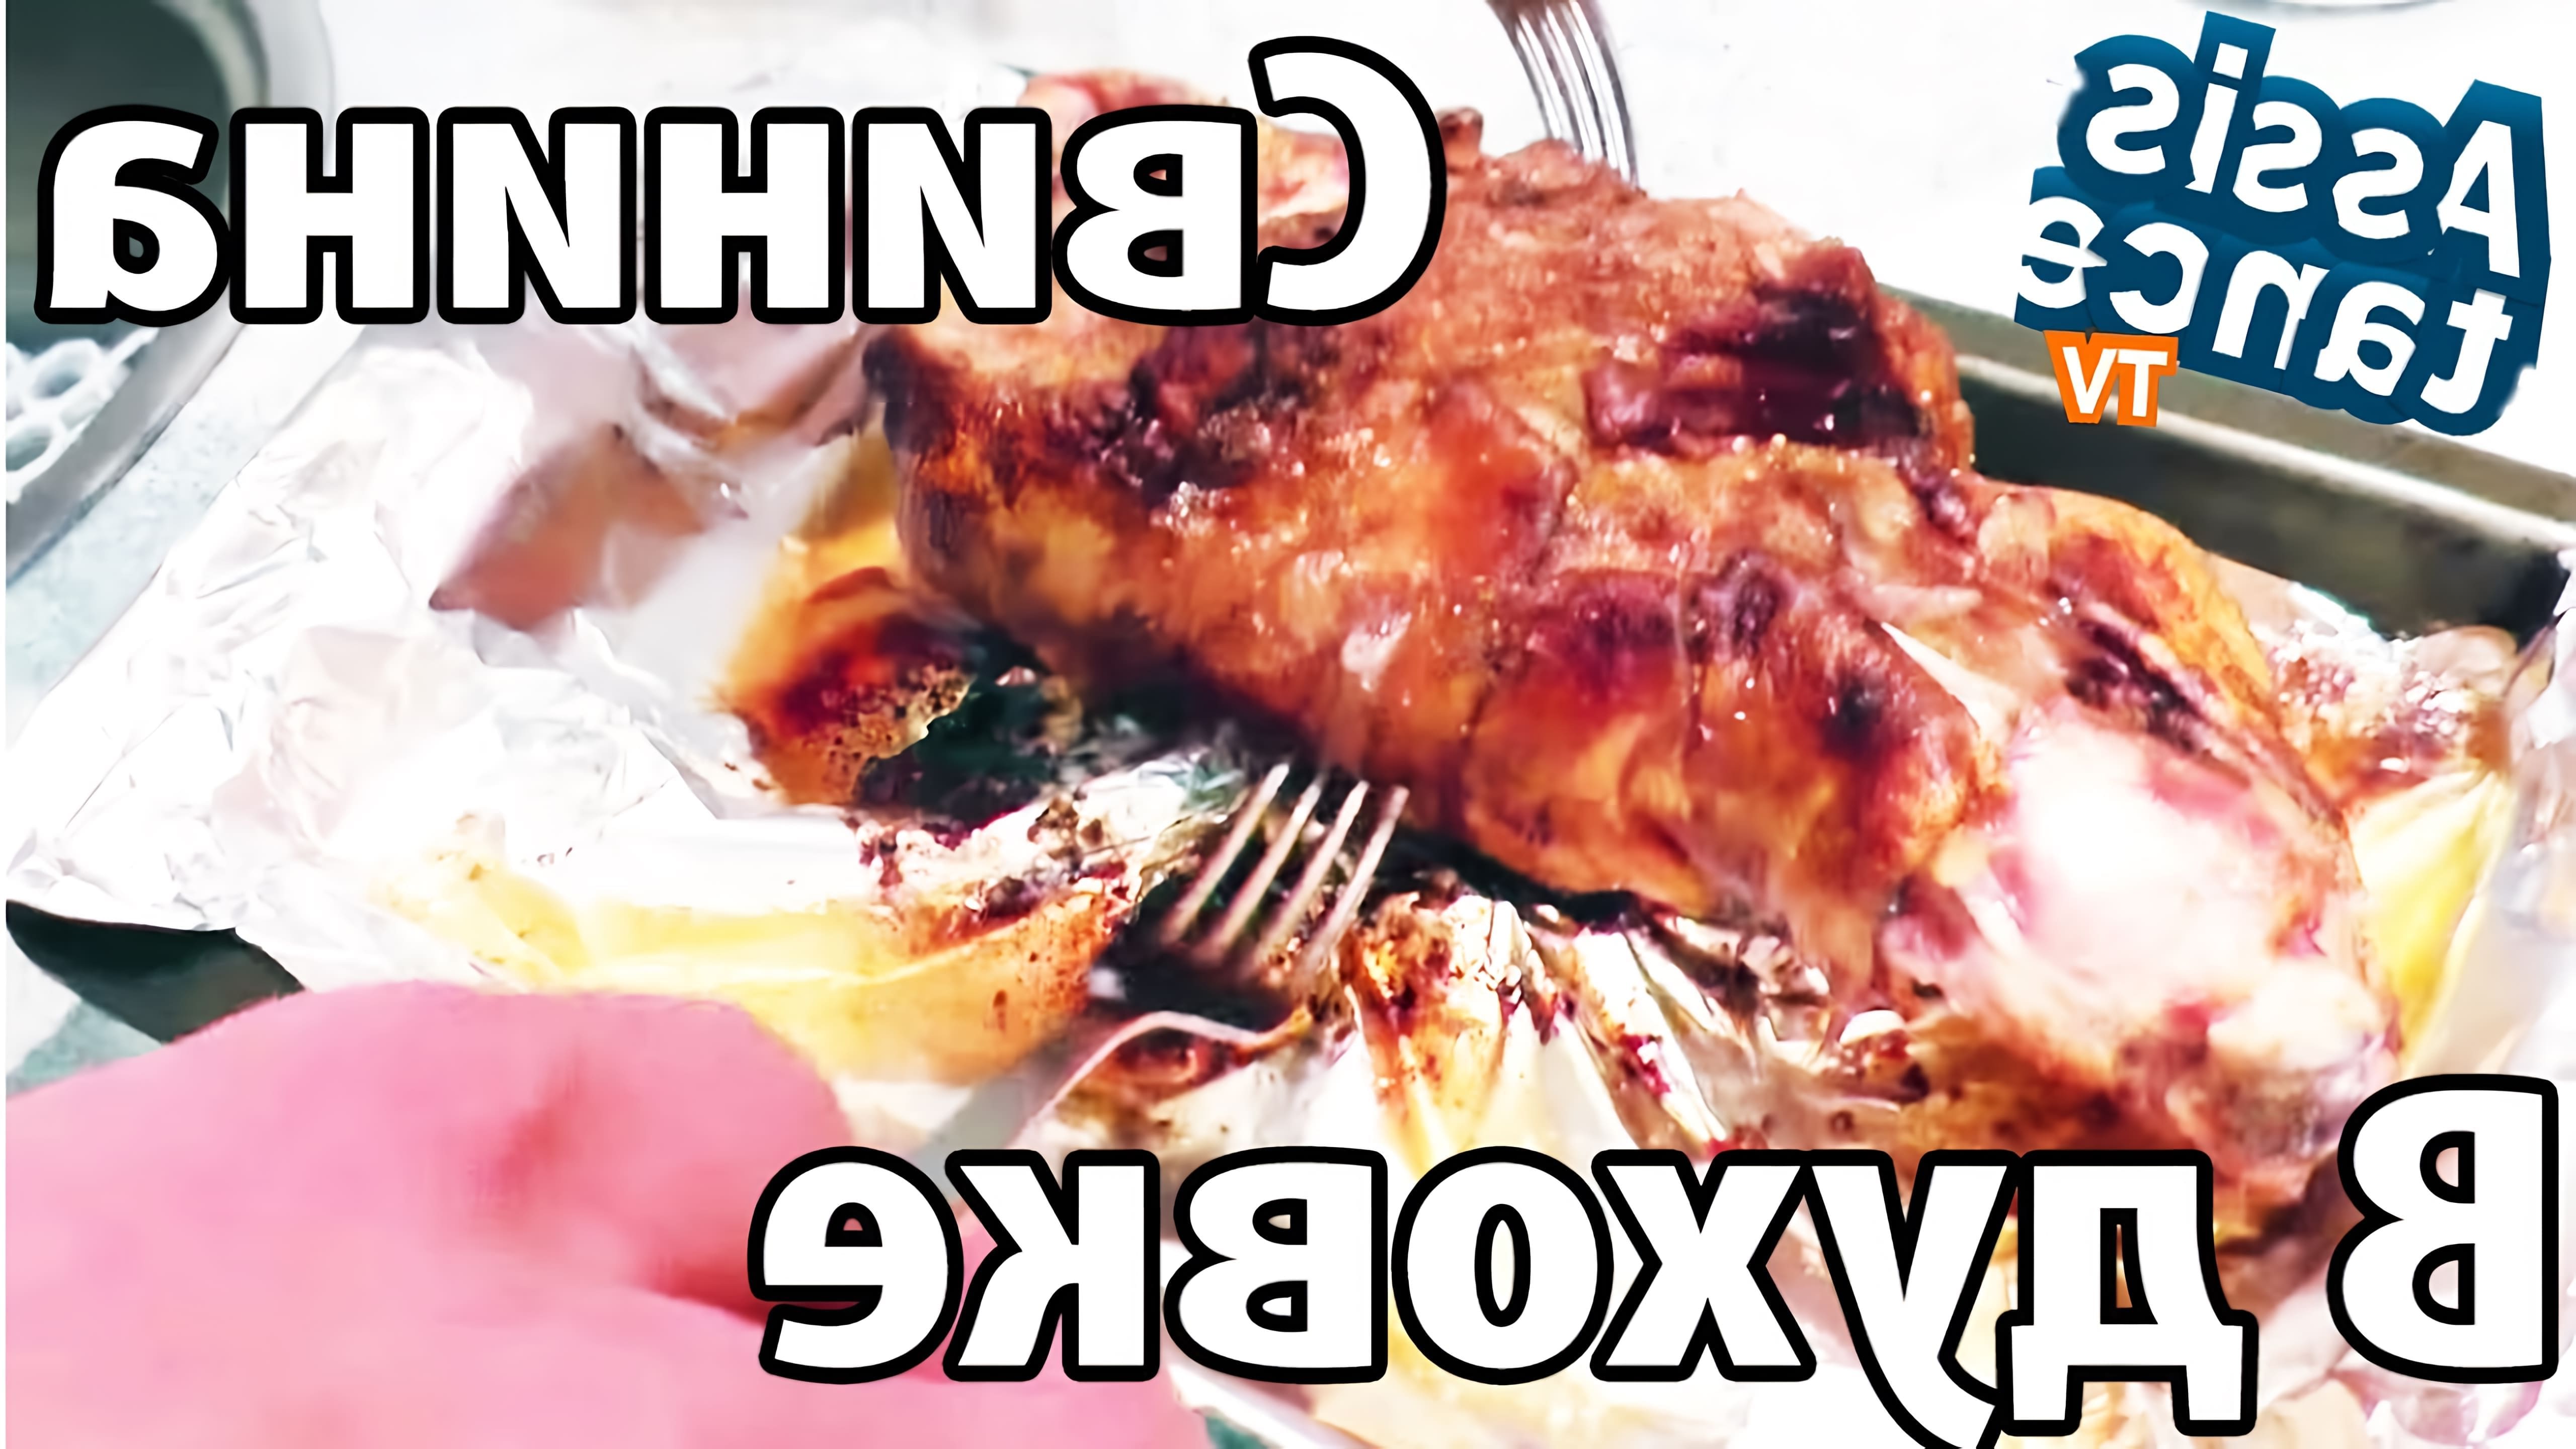 В данном видео демонстрируется рецепт приготовления свиной голяшки в духовке